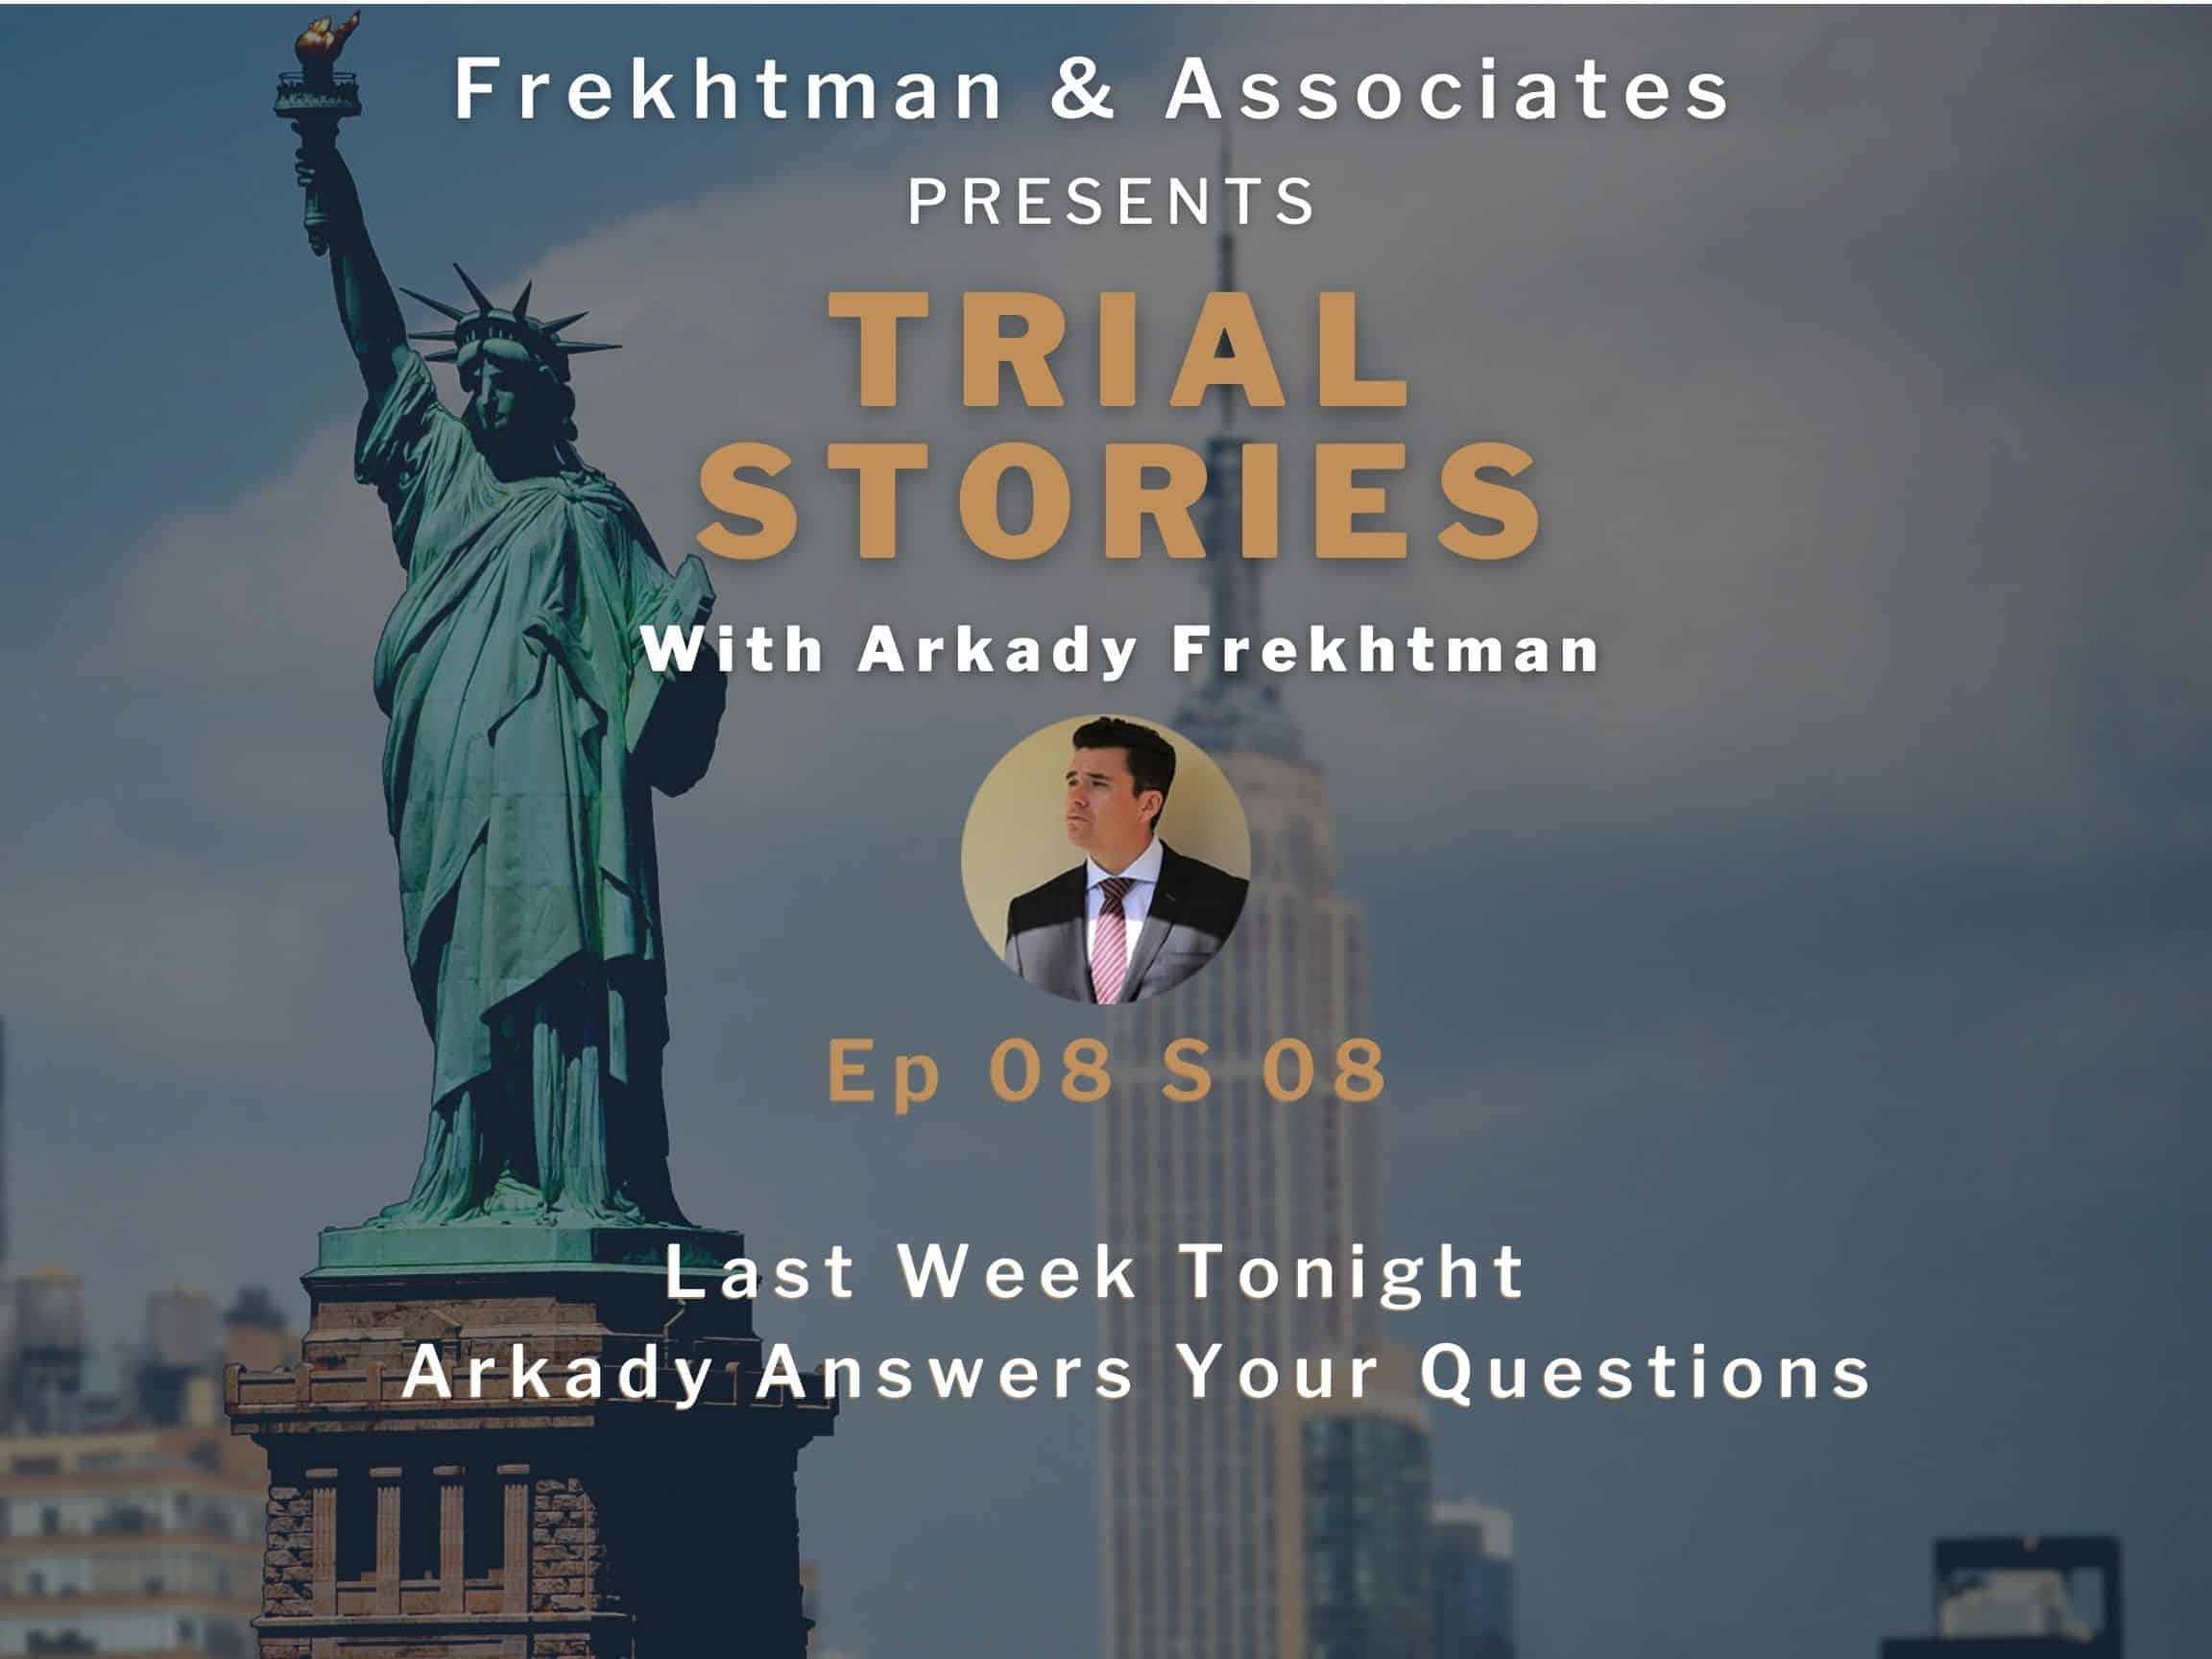 Last week tonight with Arkady Frekhtman